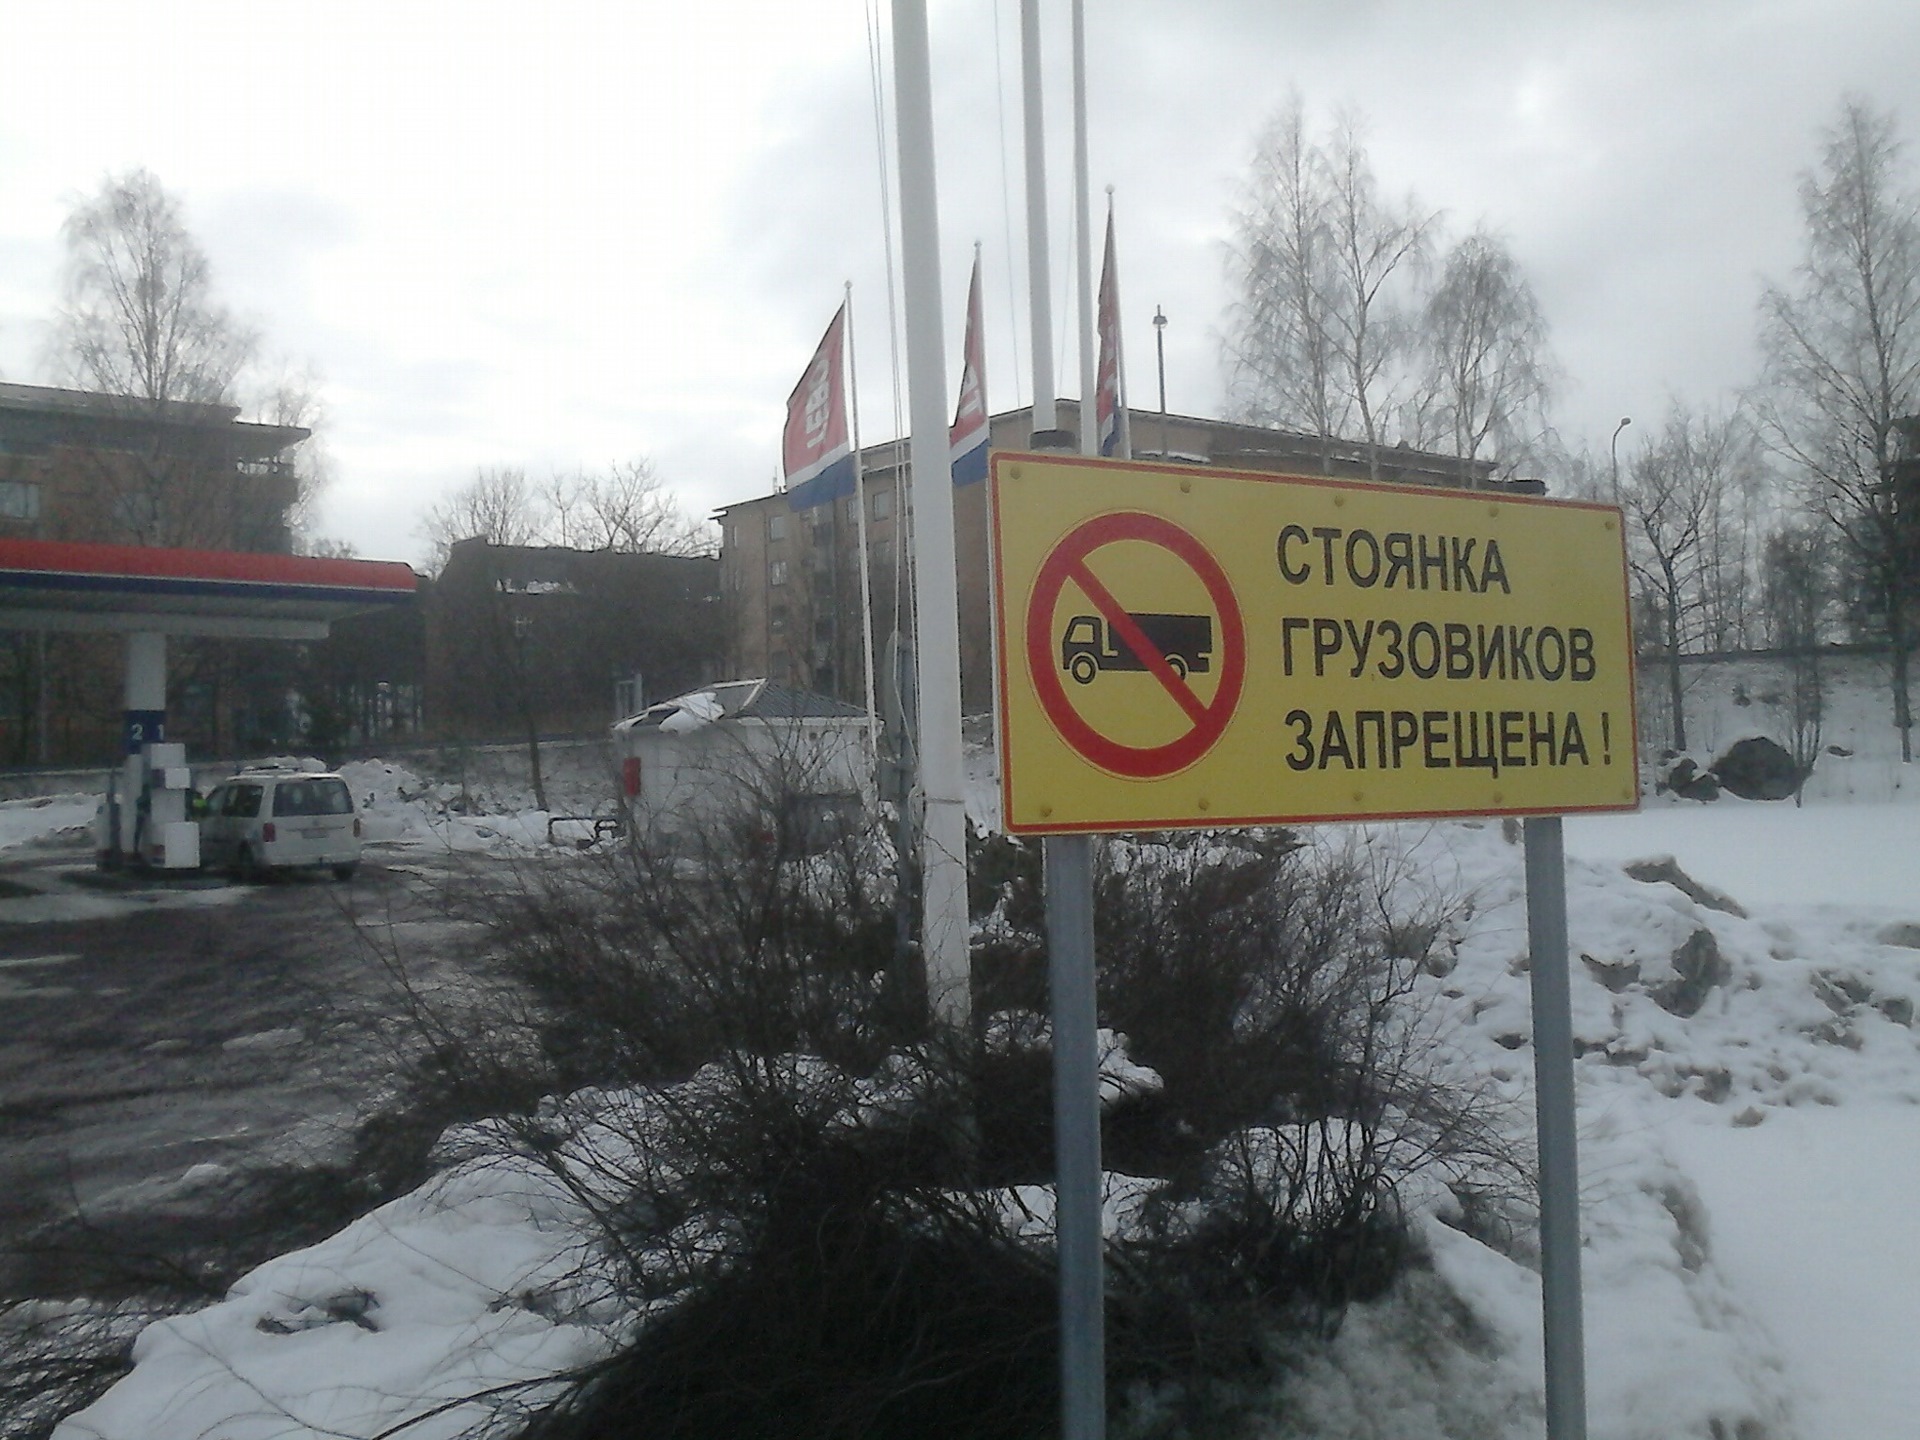 Стоянка грузовых запрещена знак. Стоянка грузовиков запрещена. Стоянка фур запрещена. Парковка стоянка для грузовиков запрещена. Дорожный знак парковка запрещена для грузовых автомобилей.